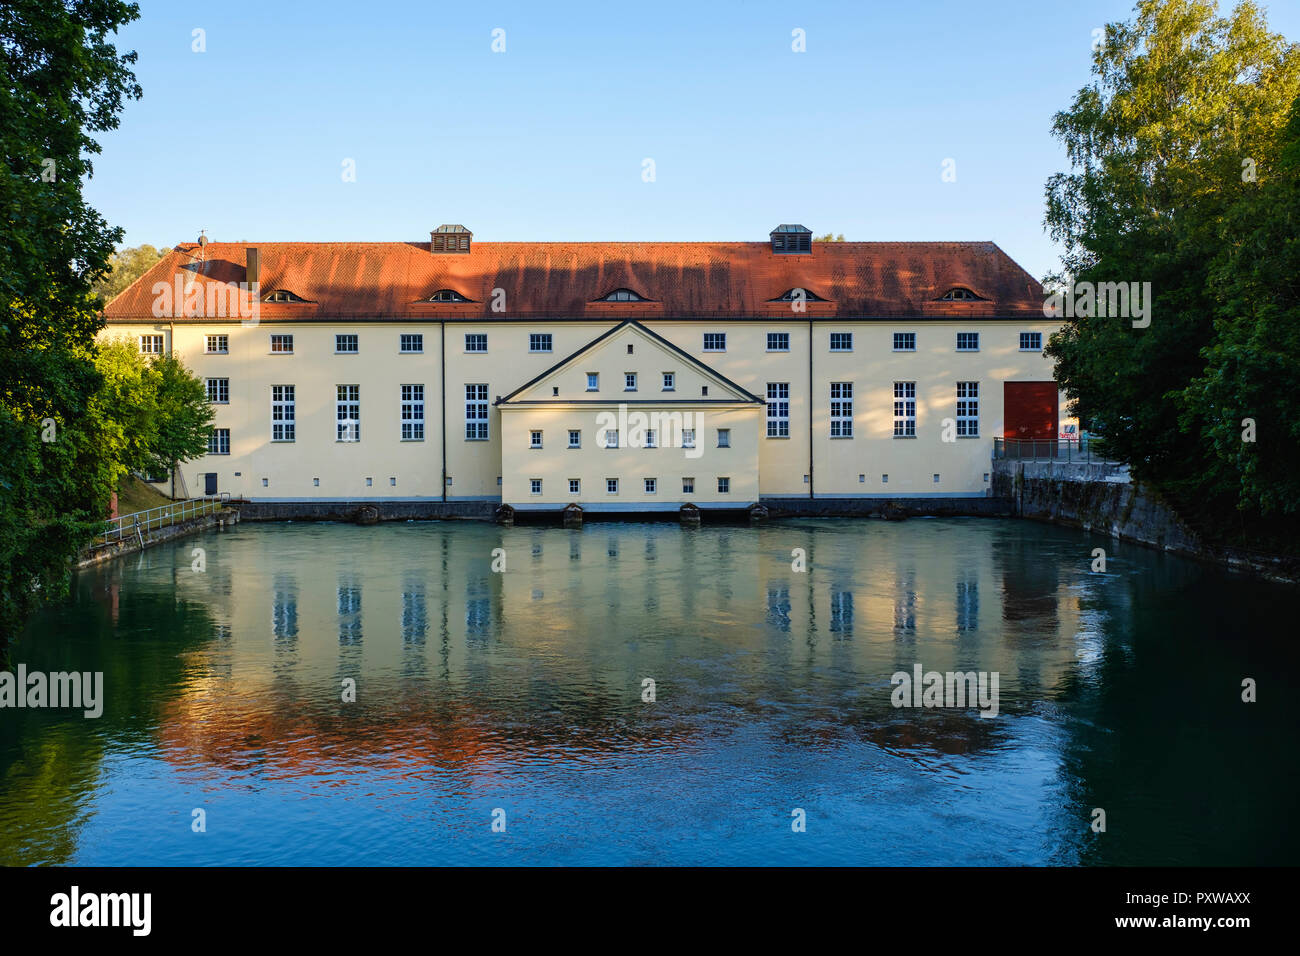 Allemagne, Munich, Sendling, plante hydro au canal près de l'Isar Flaucher Banque D'Images